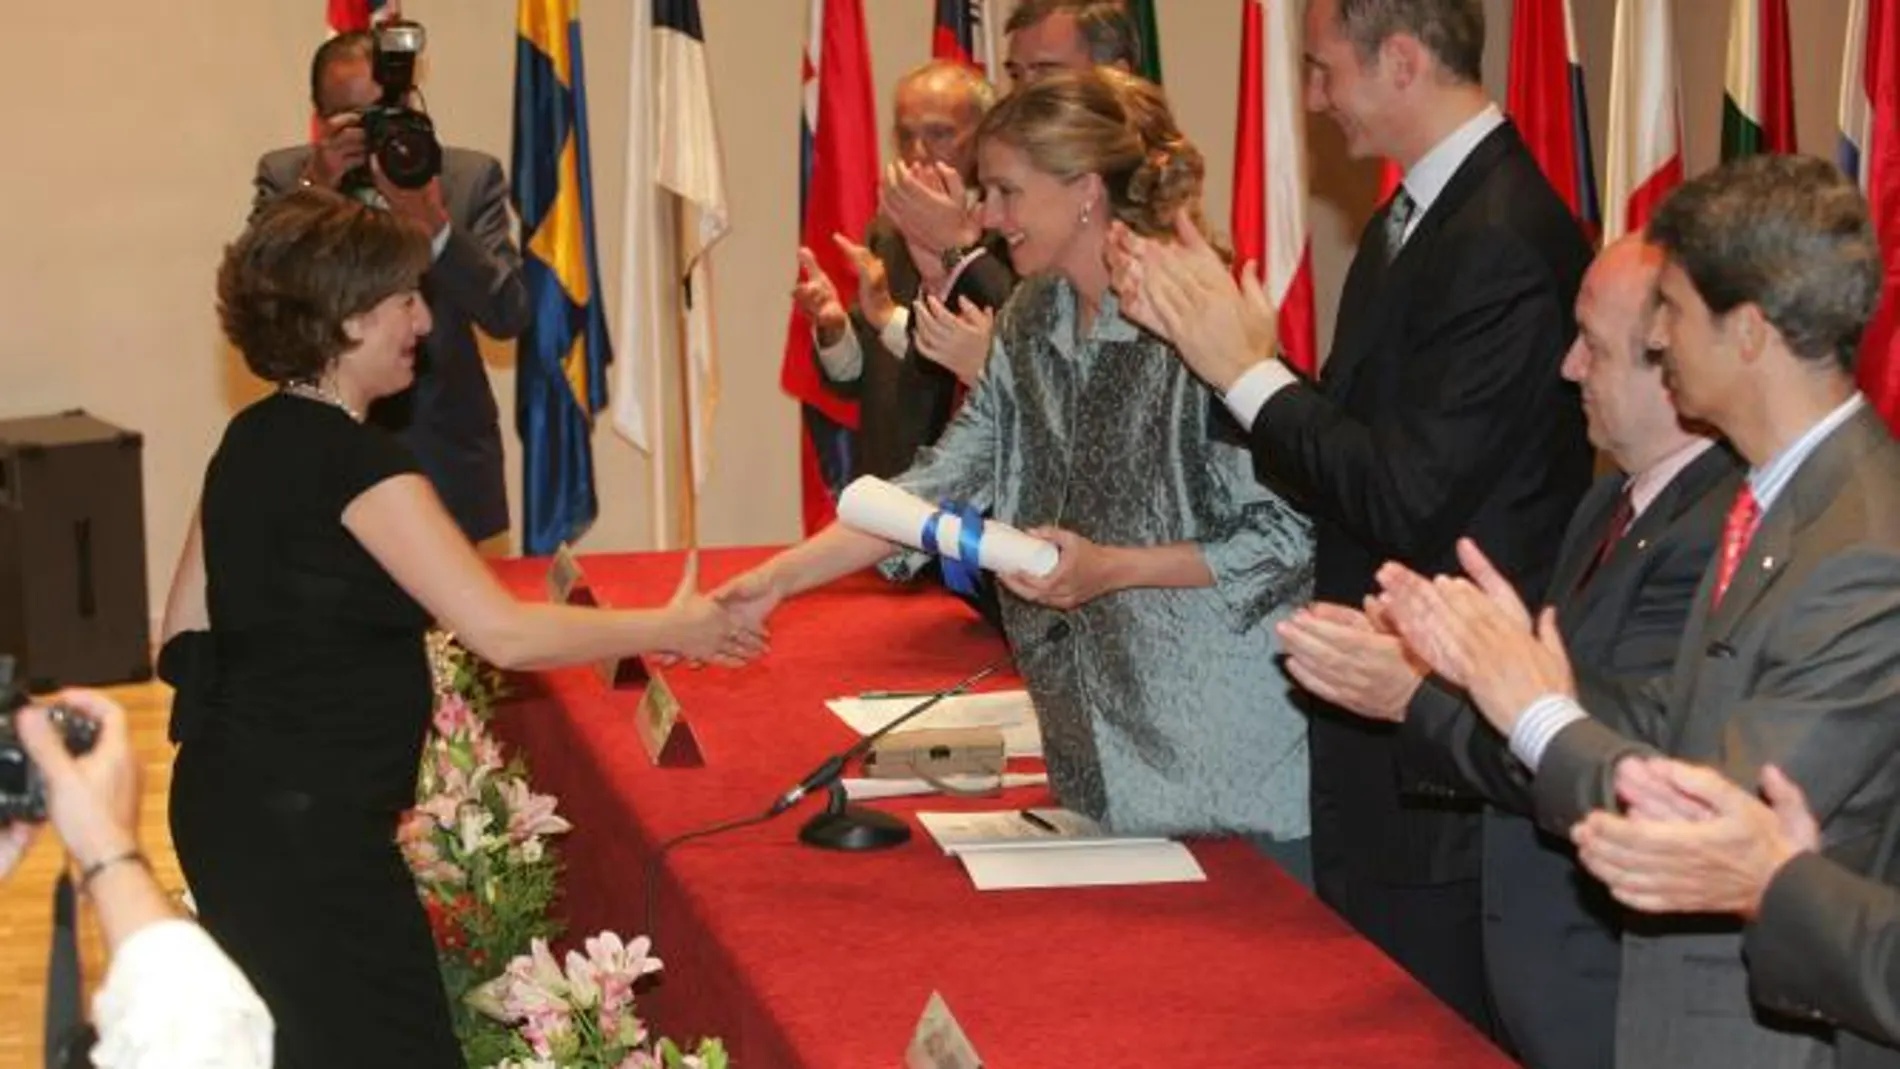 La Infanta Cristina recorta su agenda